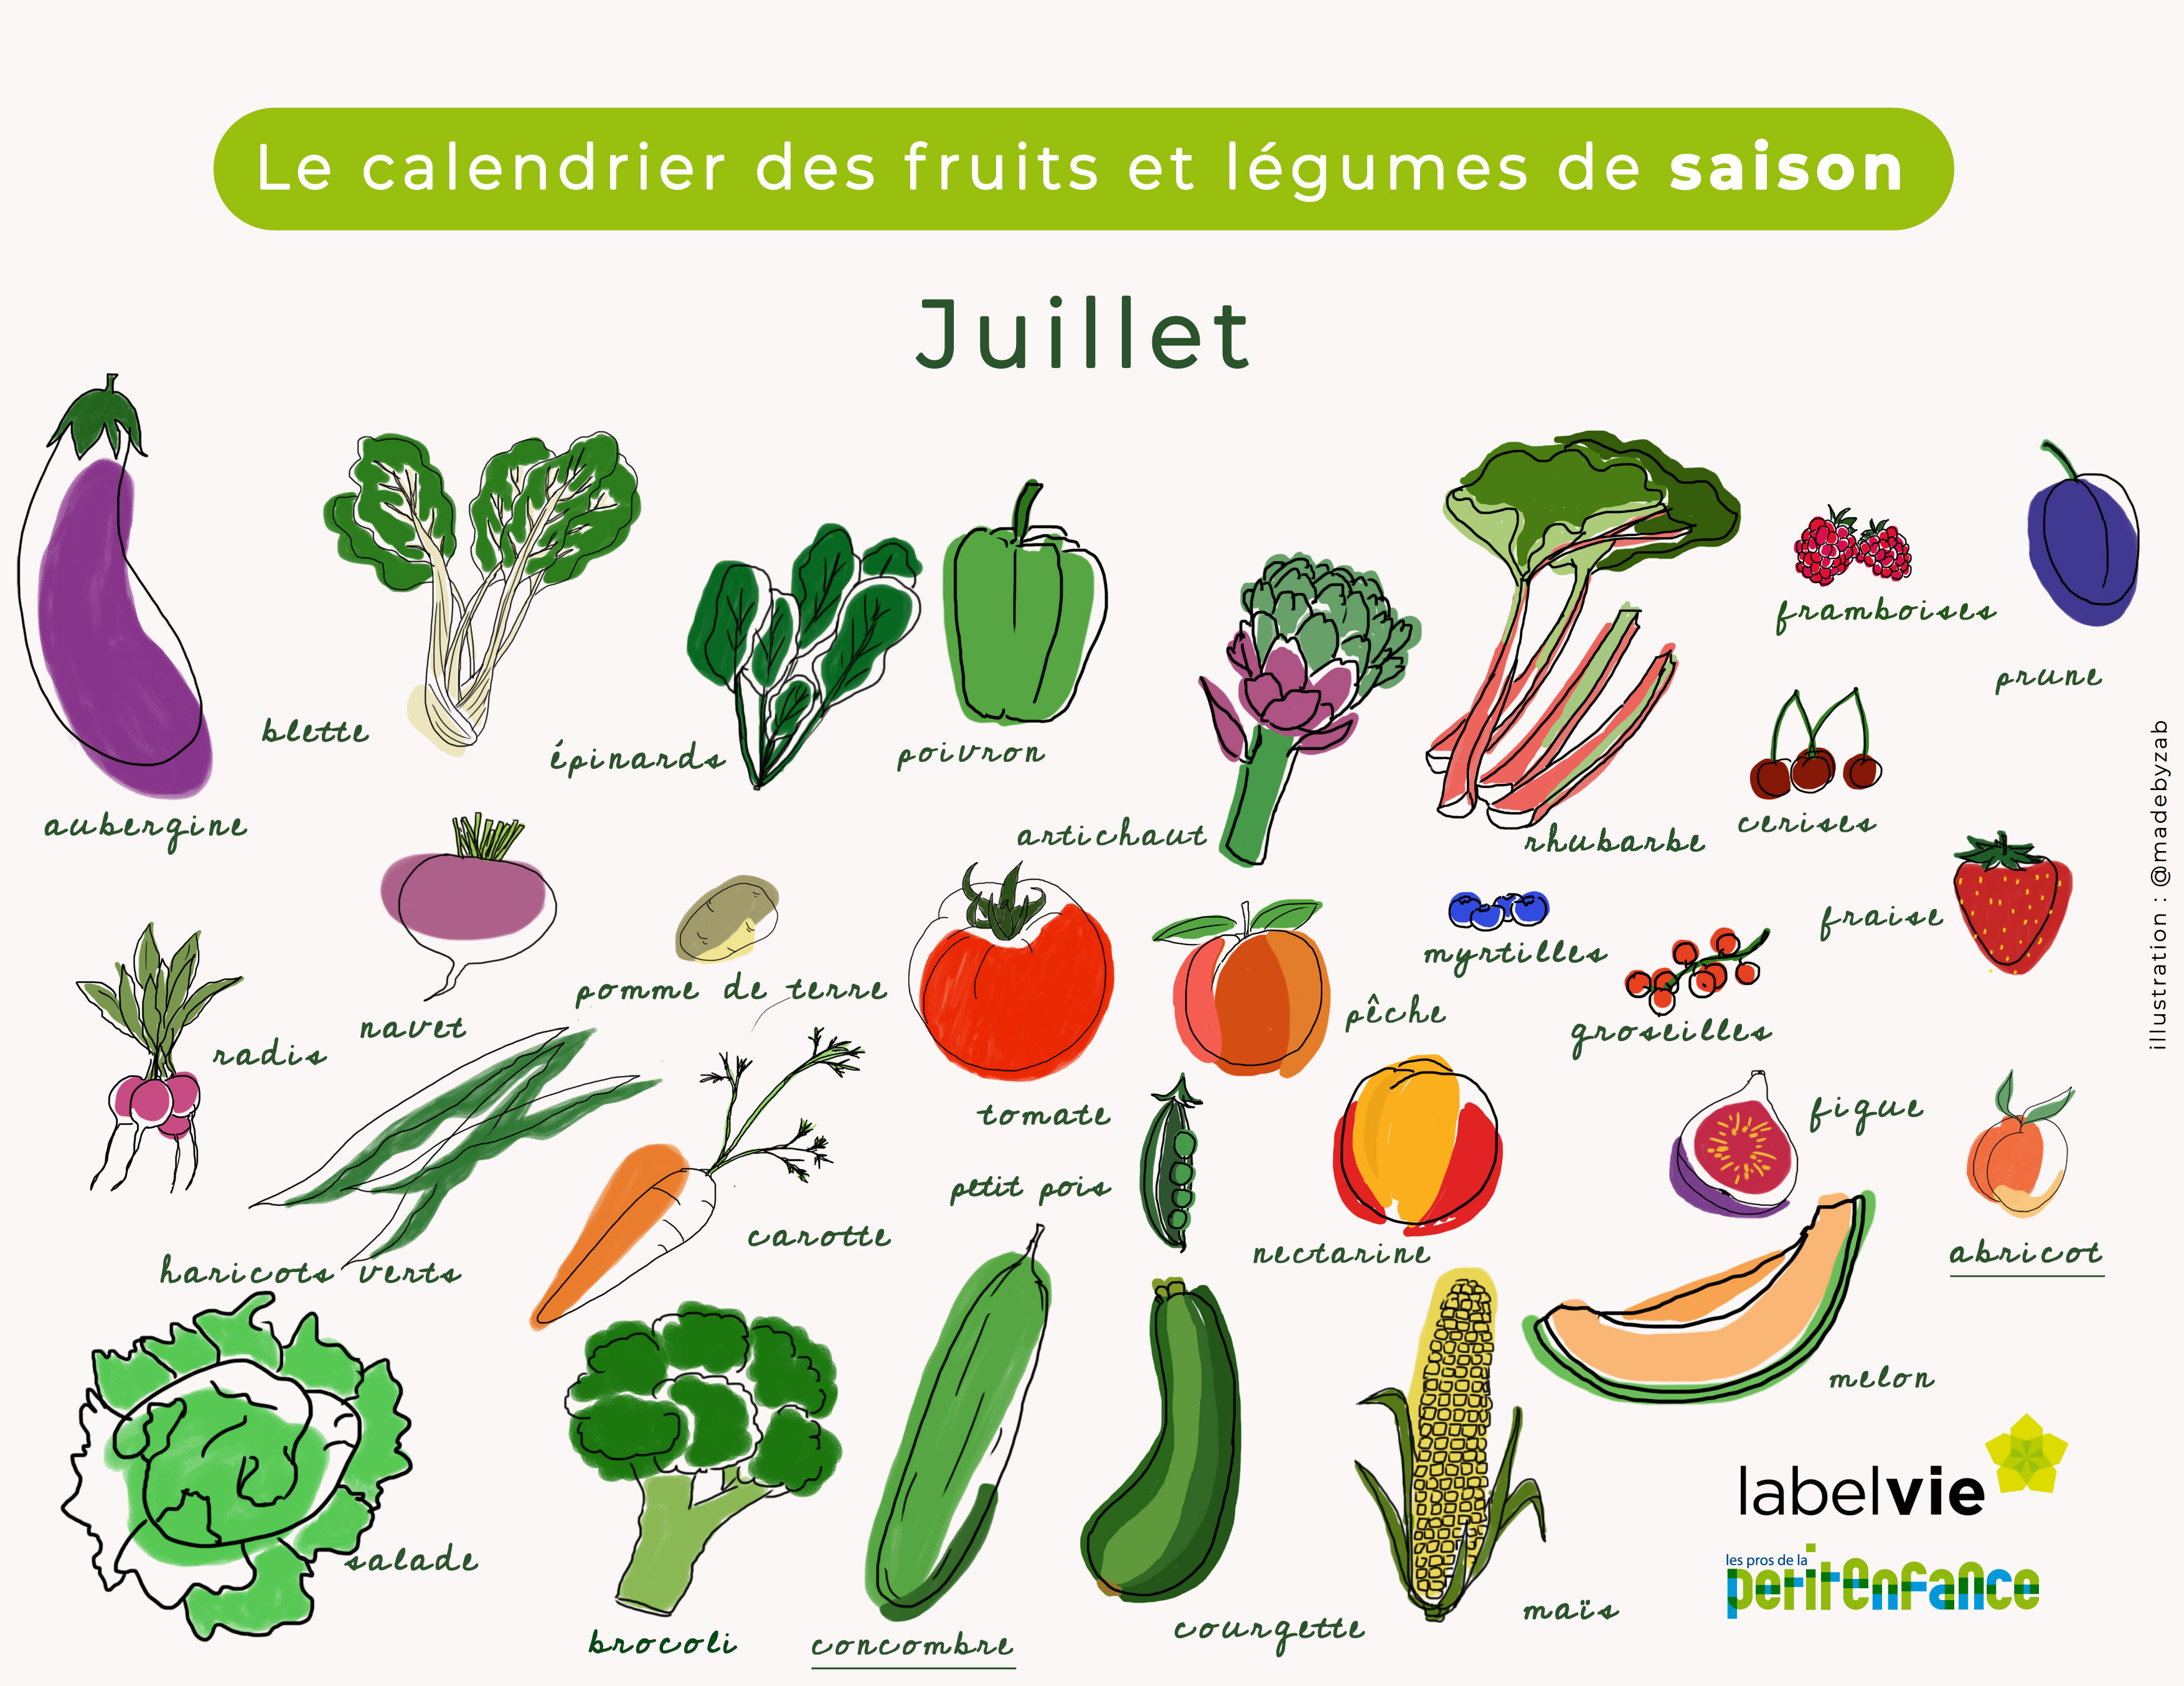 Le calendrier des fruits et légumes de juillet : le concombre et l'abricot  à l'honneur